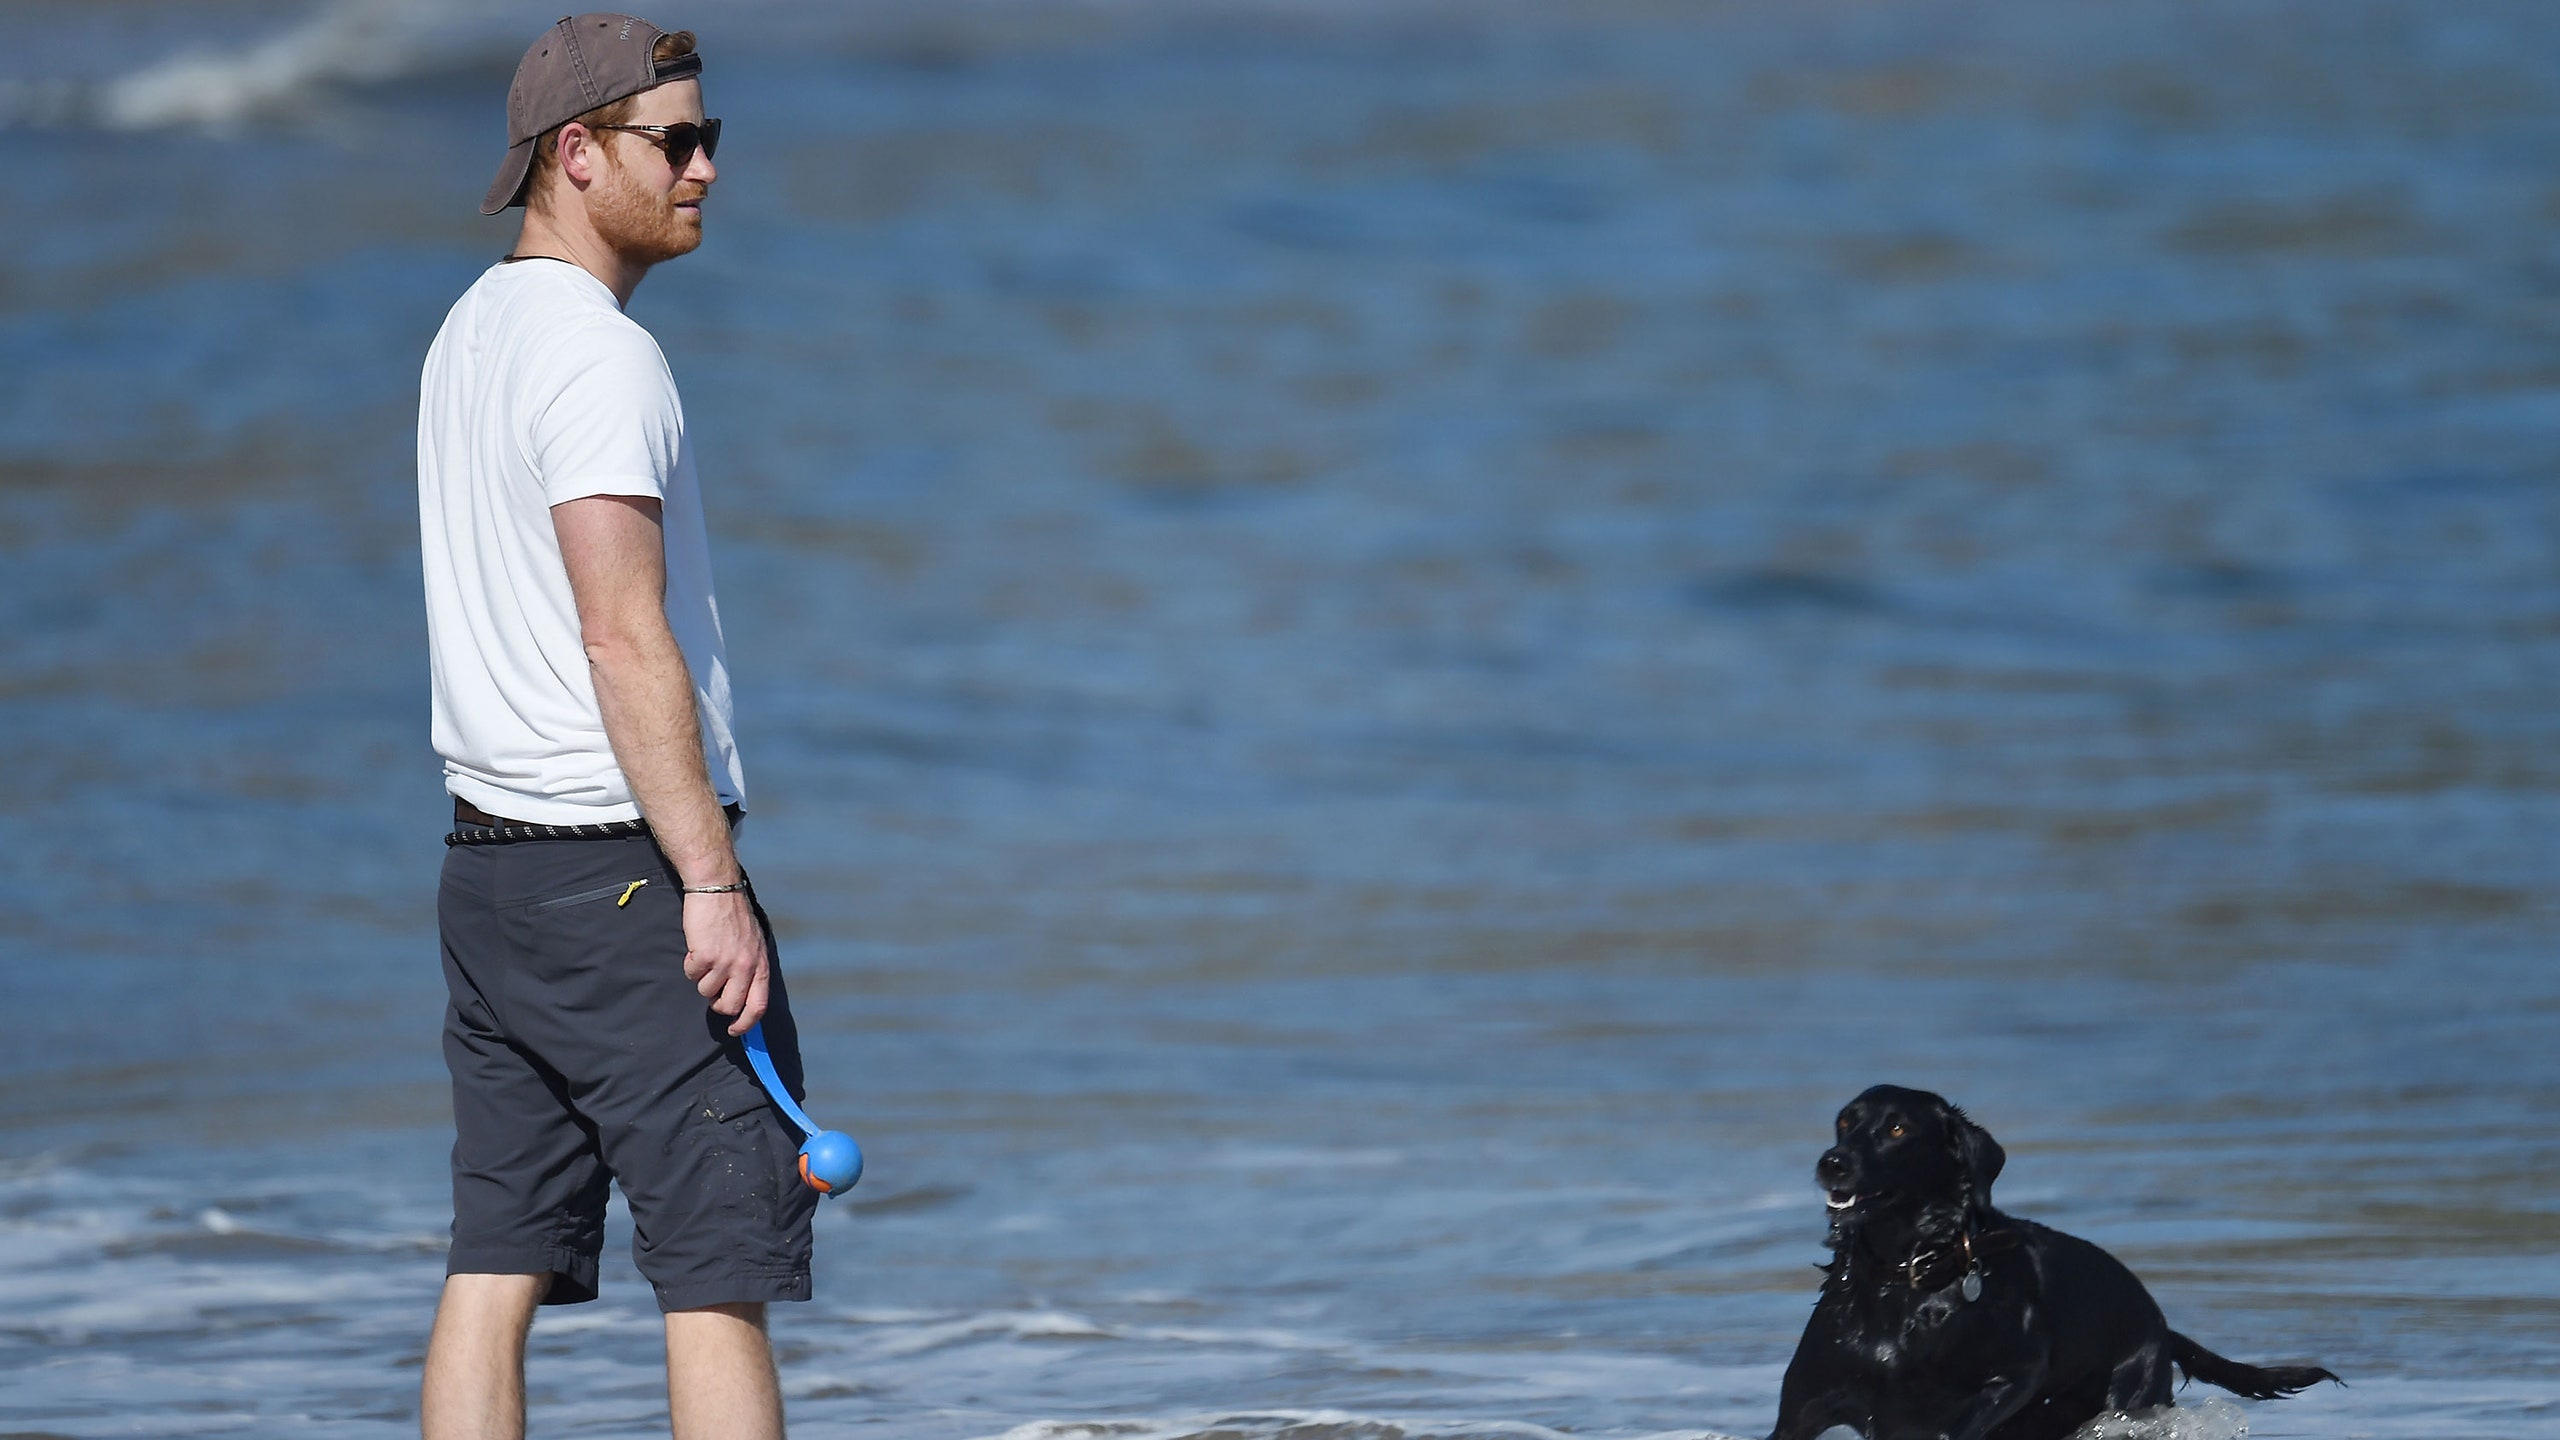 Узнали этого парня в кепке и шортах А это принц Гарри гуляет с собакой в Калифорнии